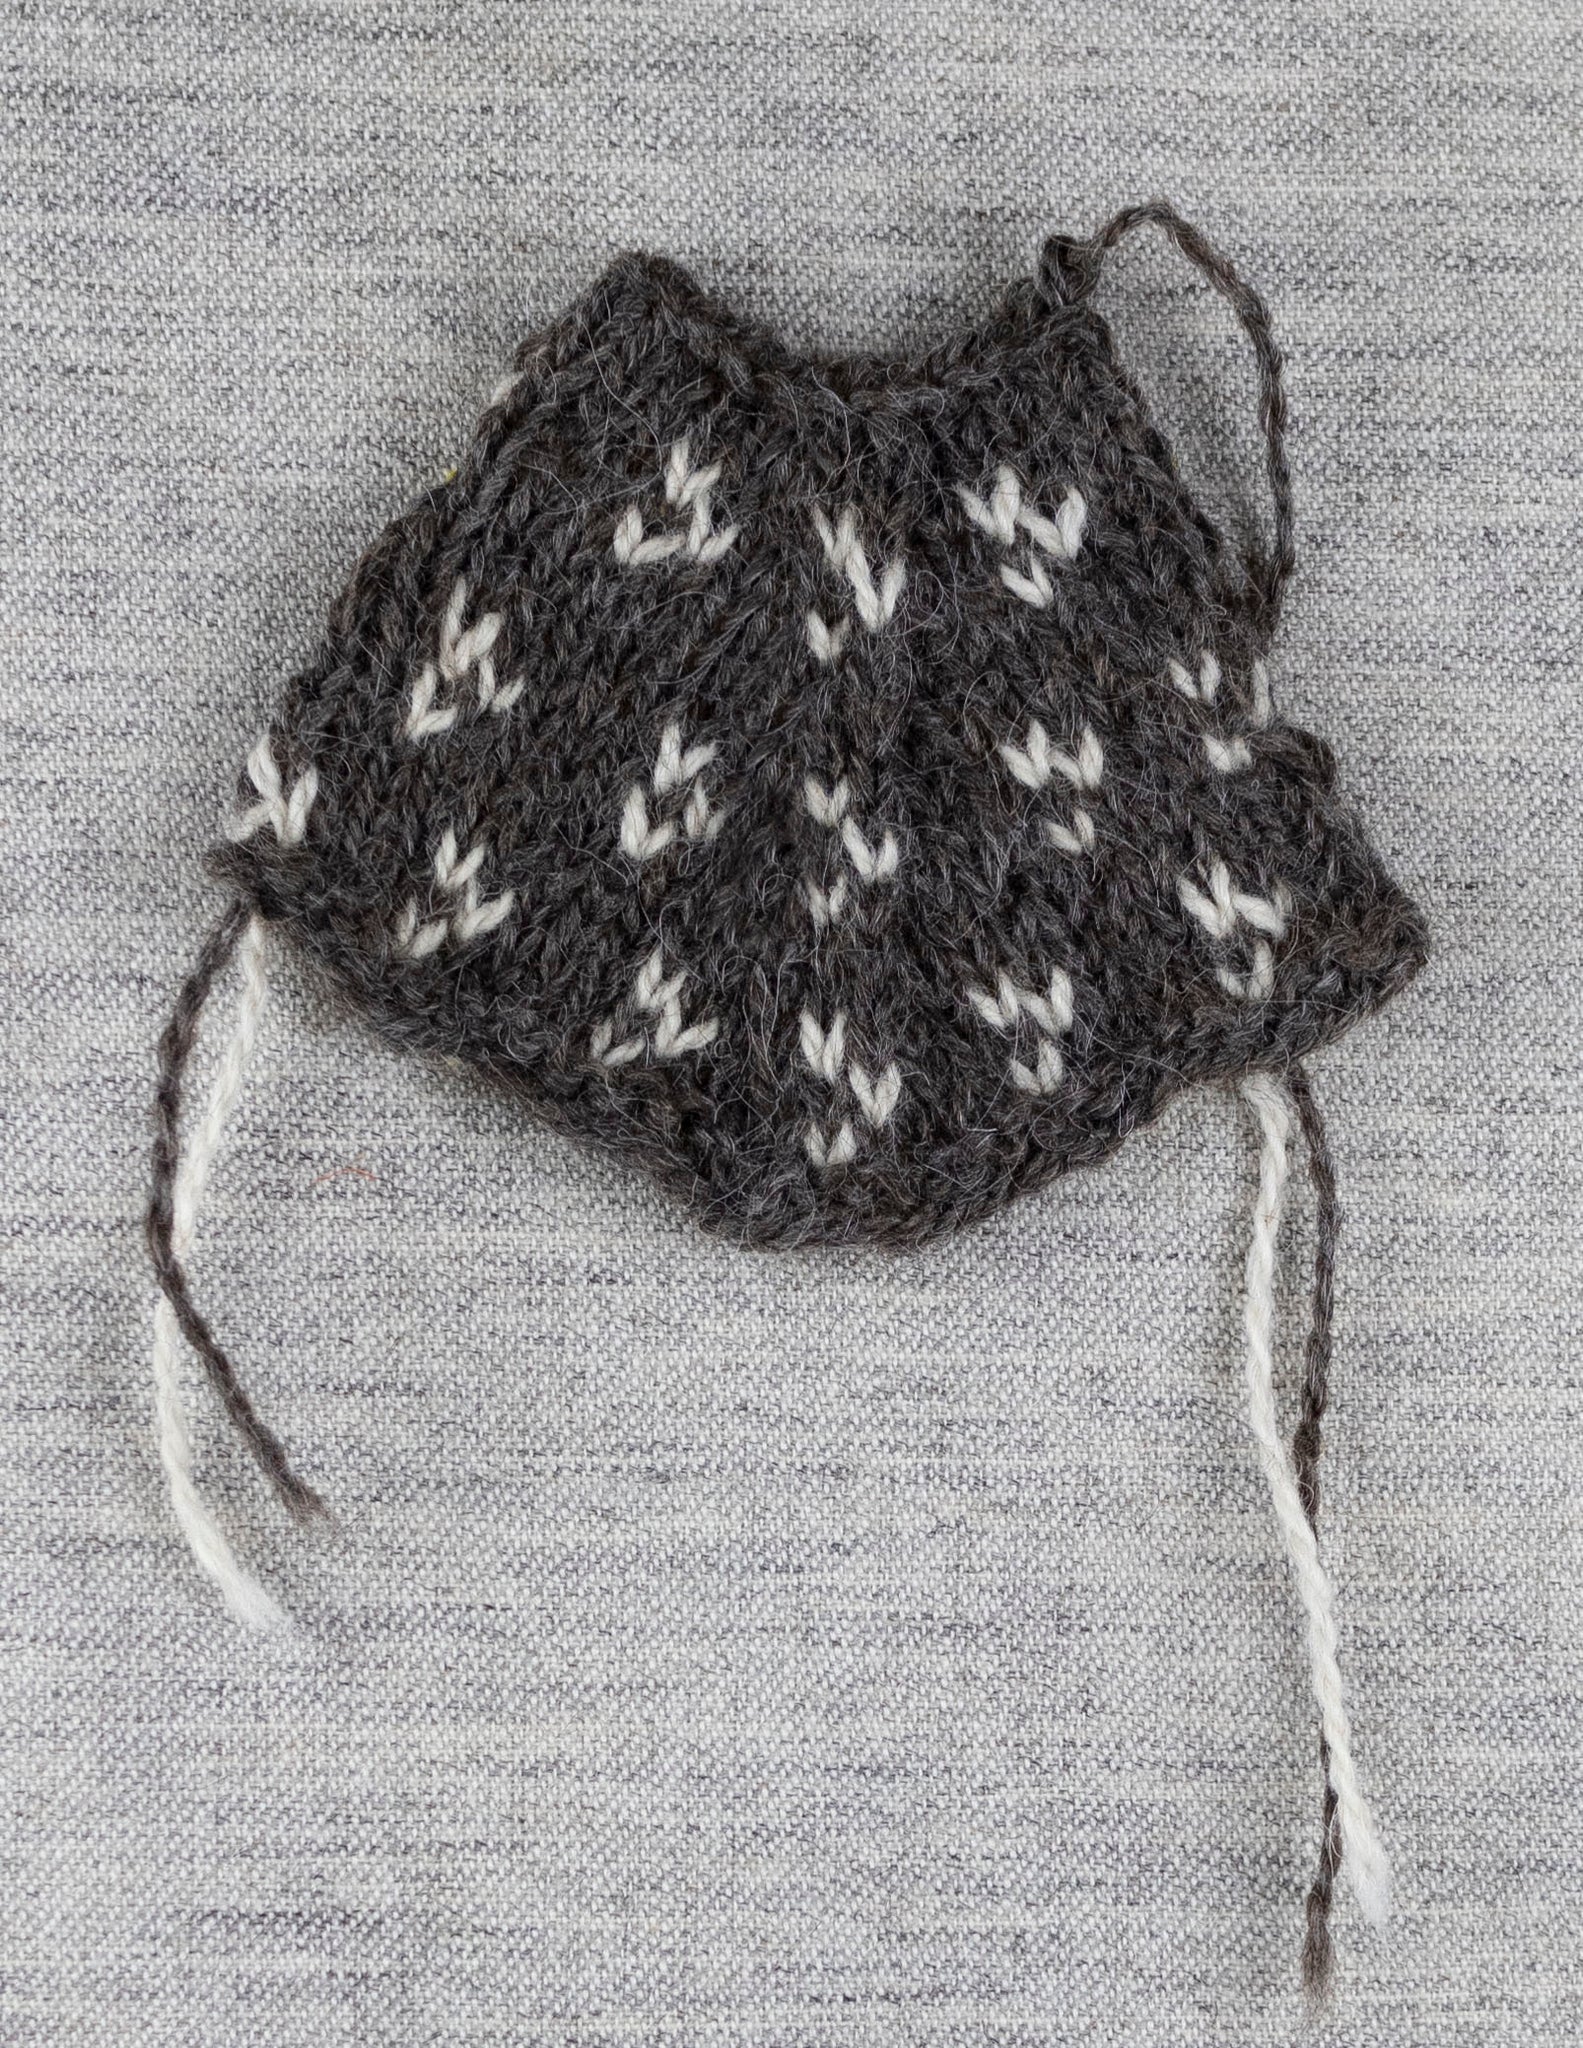 Odd sweater, knitting kit